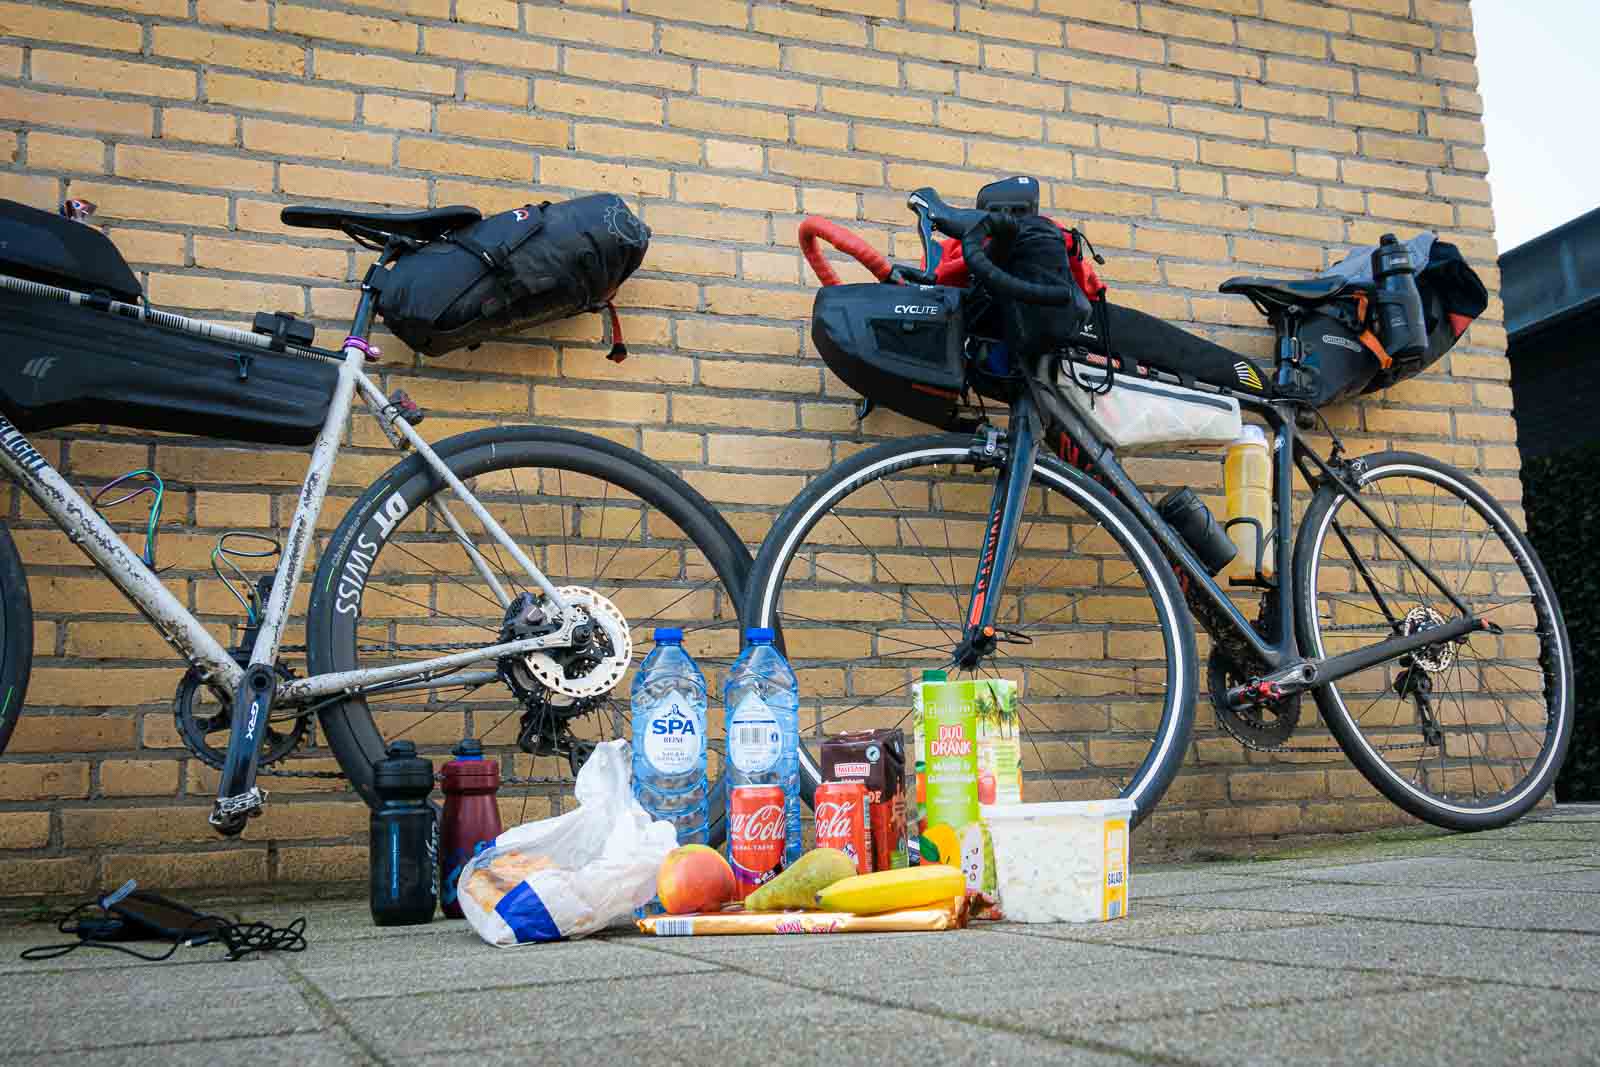 Auf dem Boden steht Proviant von zwei Teilnehmern des Race around the Netherlands, darunter Wasser, Kakao, Kartoffelsalat und Cola